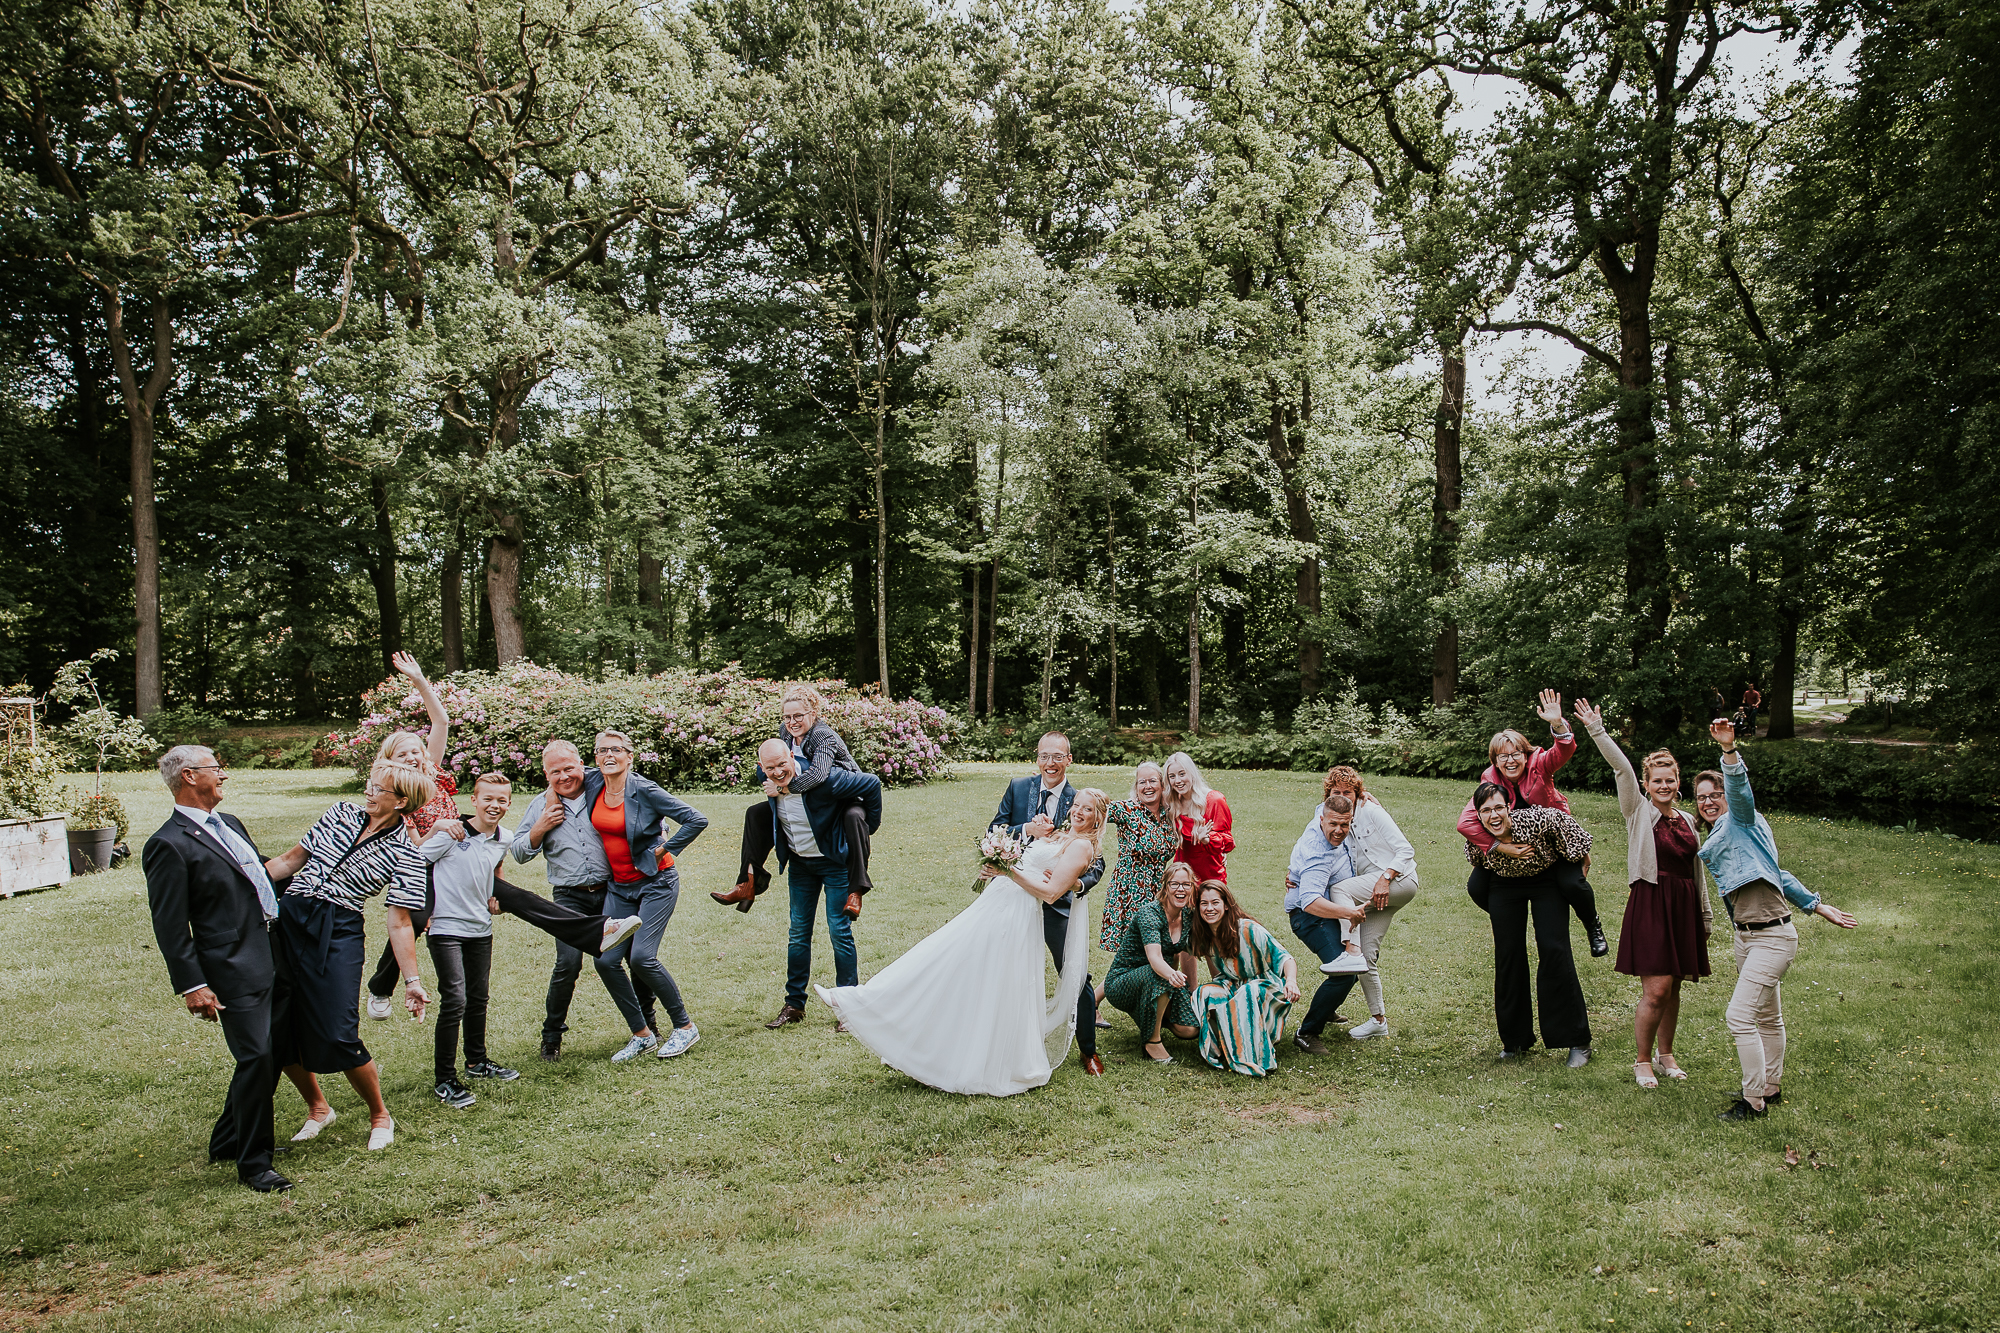 Gezellige groepsfoto's op de bruiloft van Oscar en Jelske. Trouwreportage door trouwfotograaf Nickie Fotografie uit Friesland.